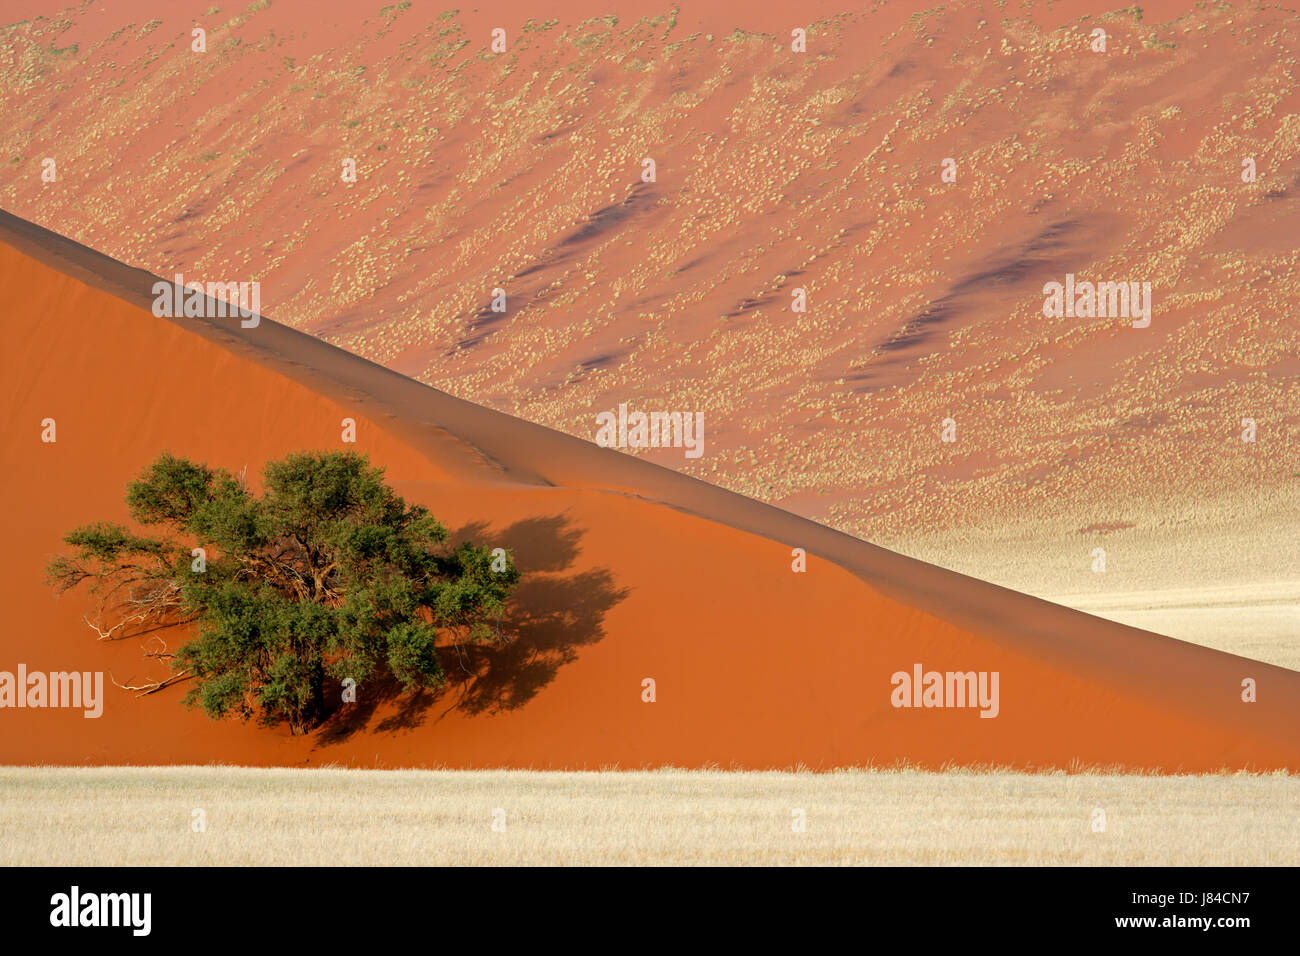 Le désert de dunes du désert arbre paysage nature paysage acacia paysages arides Banque D'Images